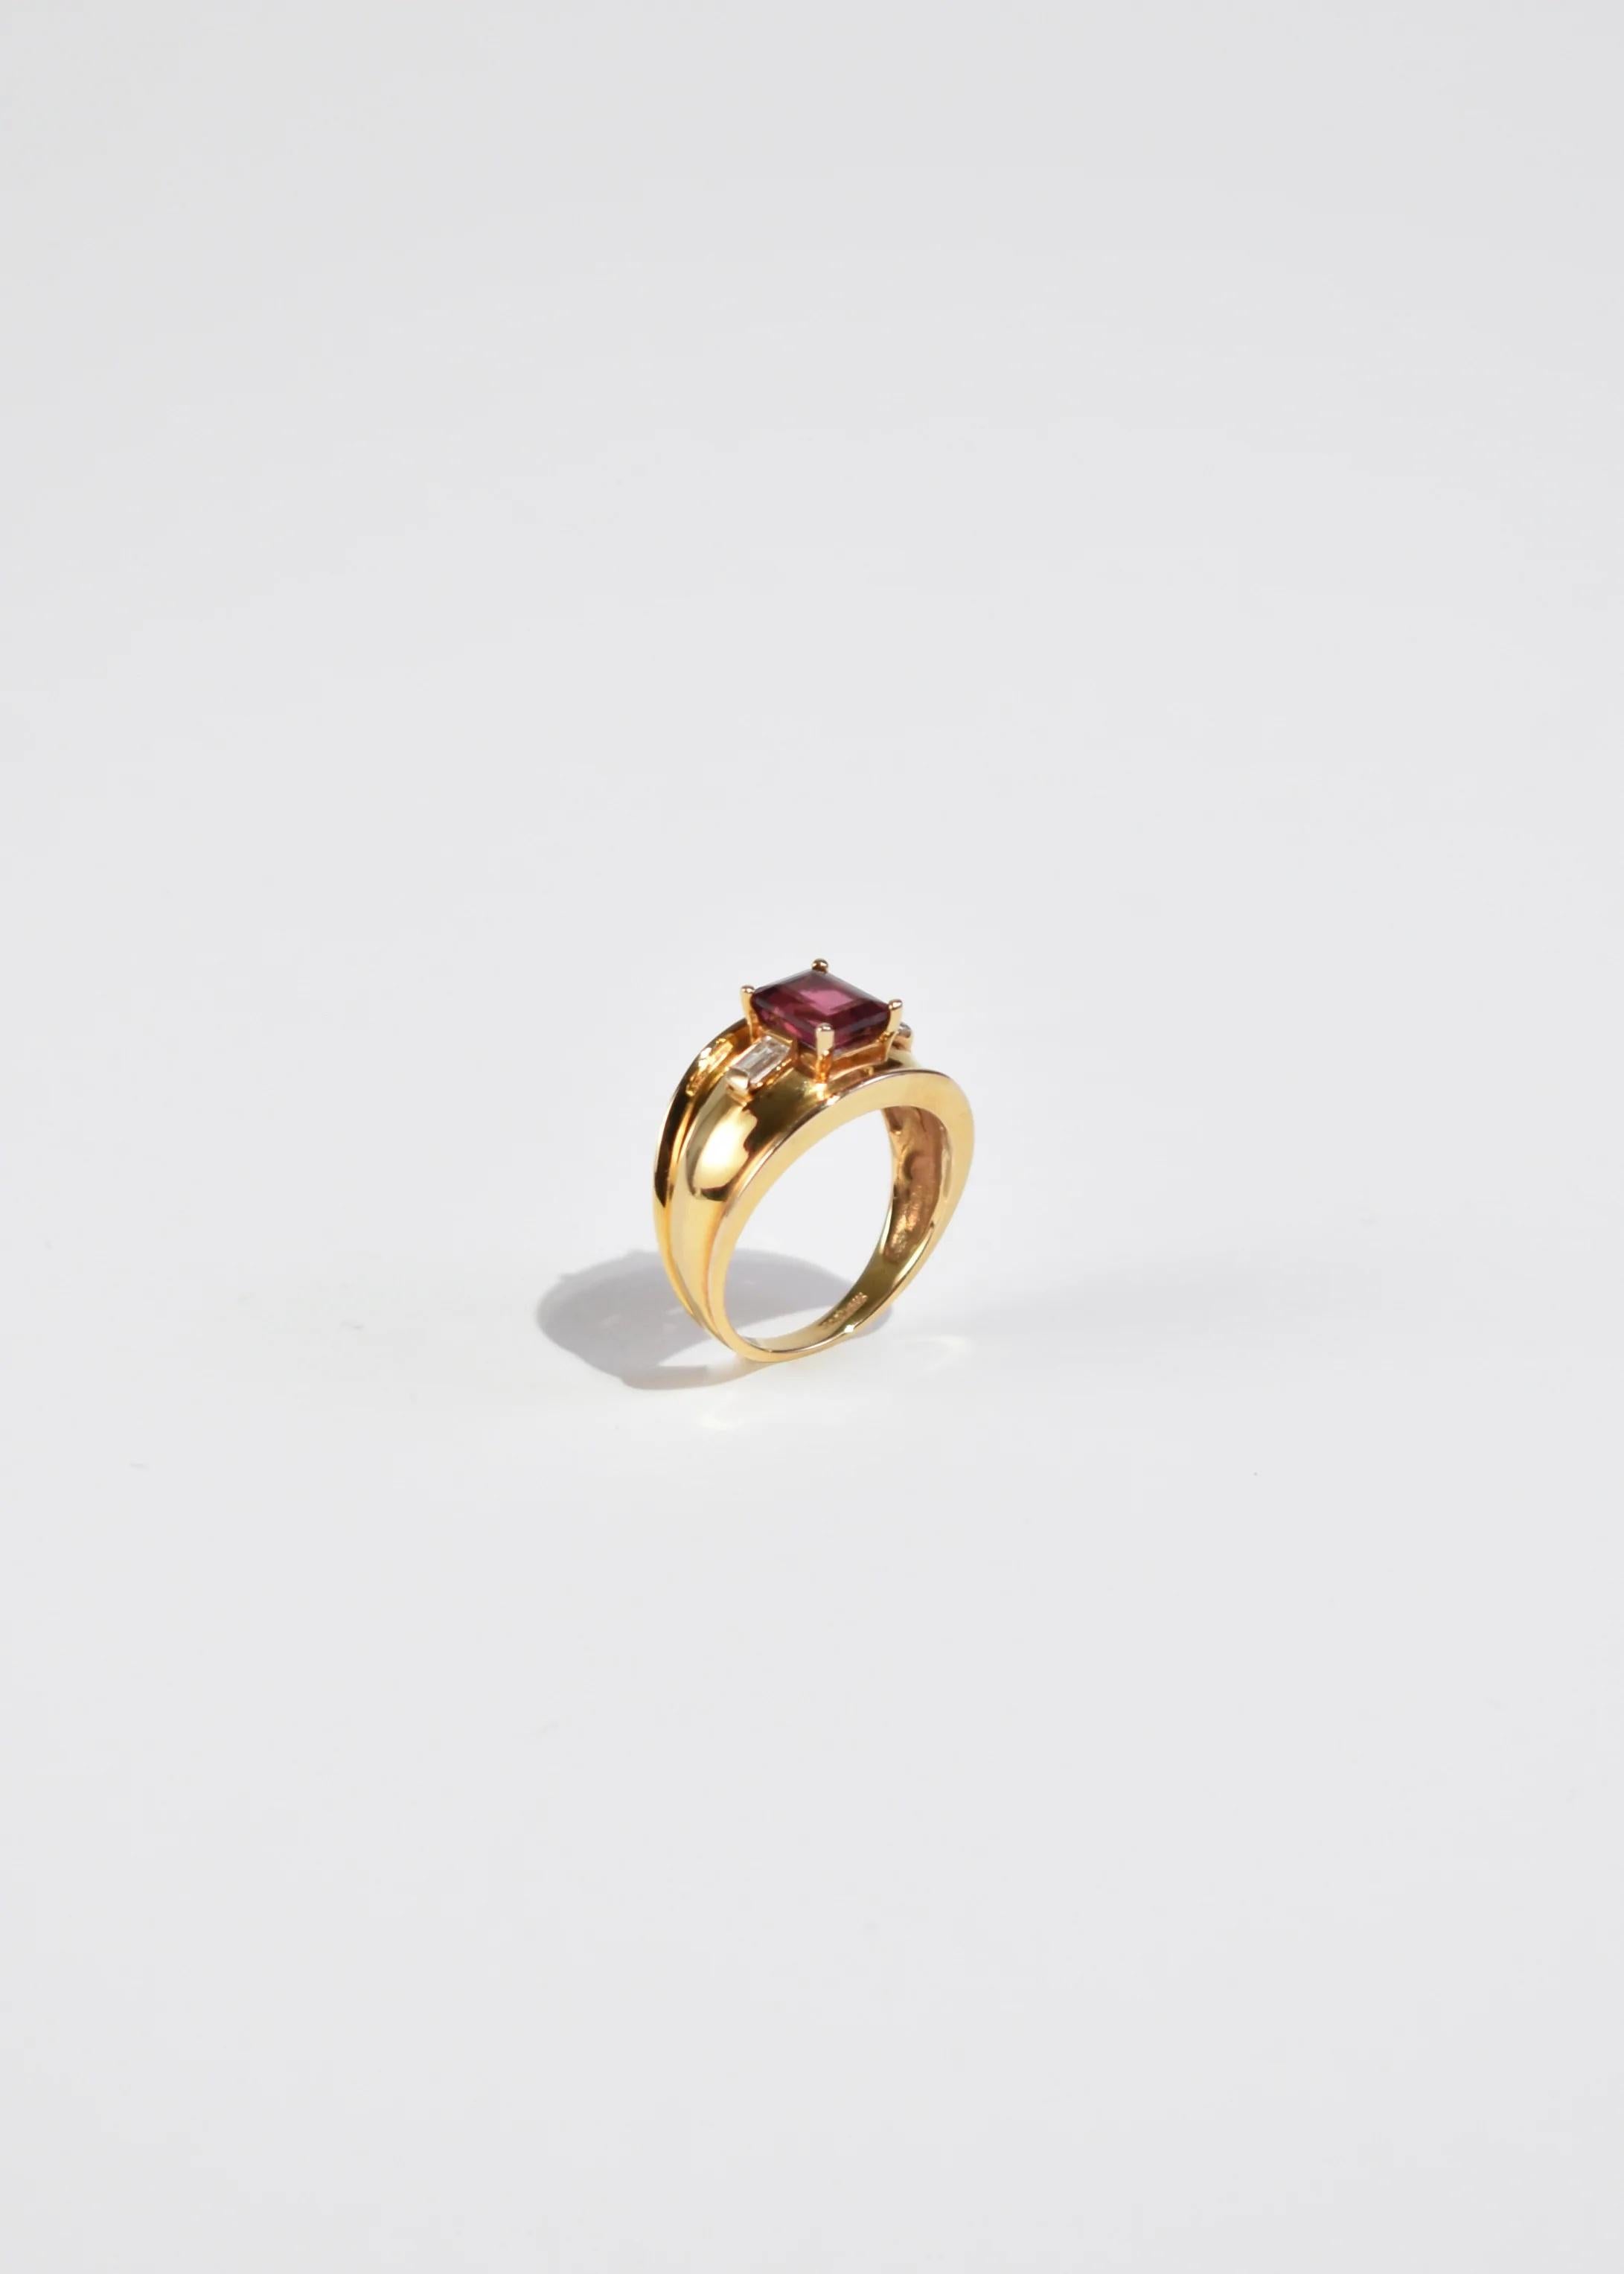 Wunderschöner Vintage-Goldring mit rosa Turmalin und Diamanten. Gestempelt 14k.

MATERIAL: 14k Gold, rosa Turmalin, Diamant.

